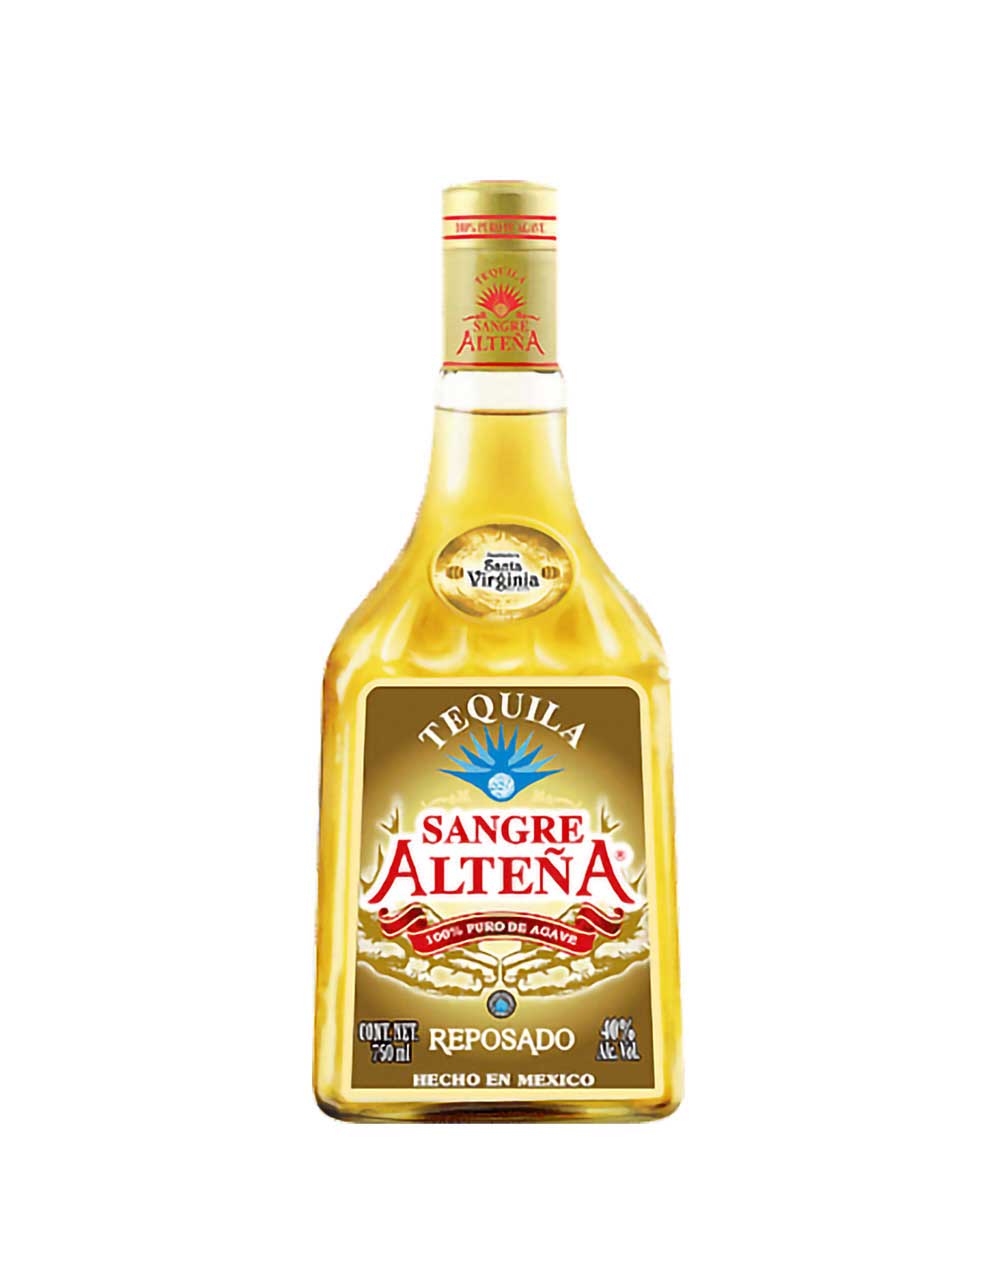 Chula Parranda Extra Anejo Huichlon Tequila